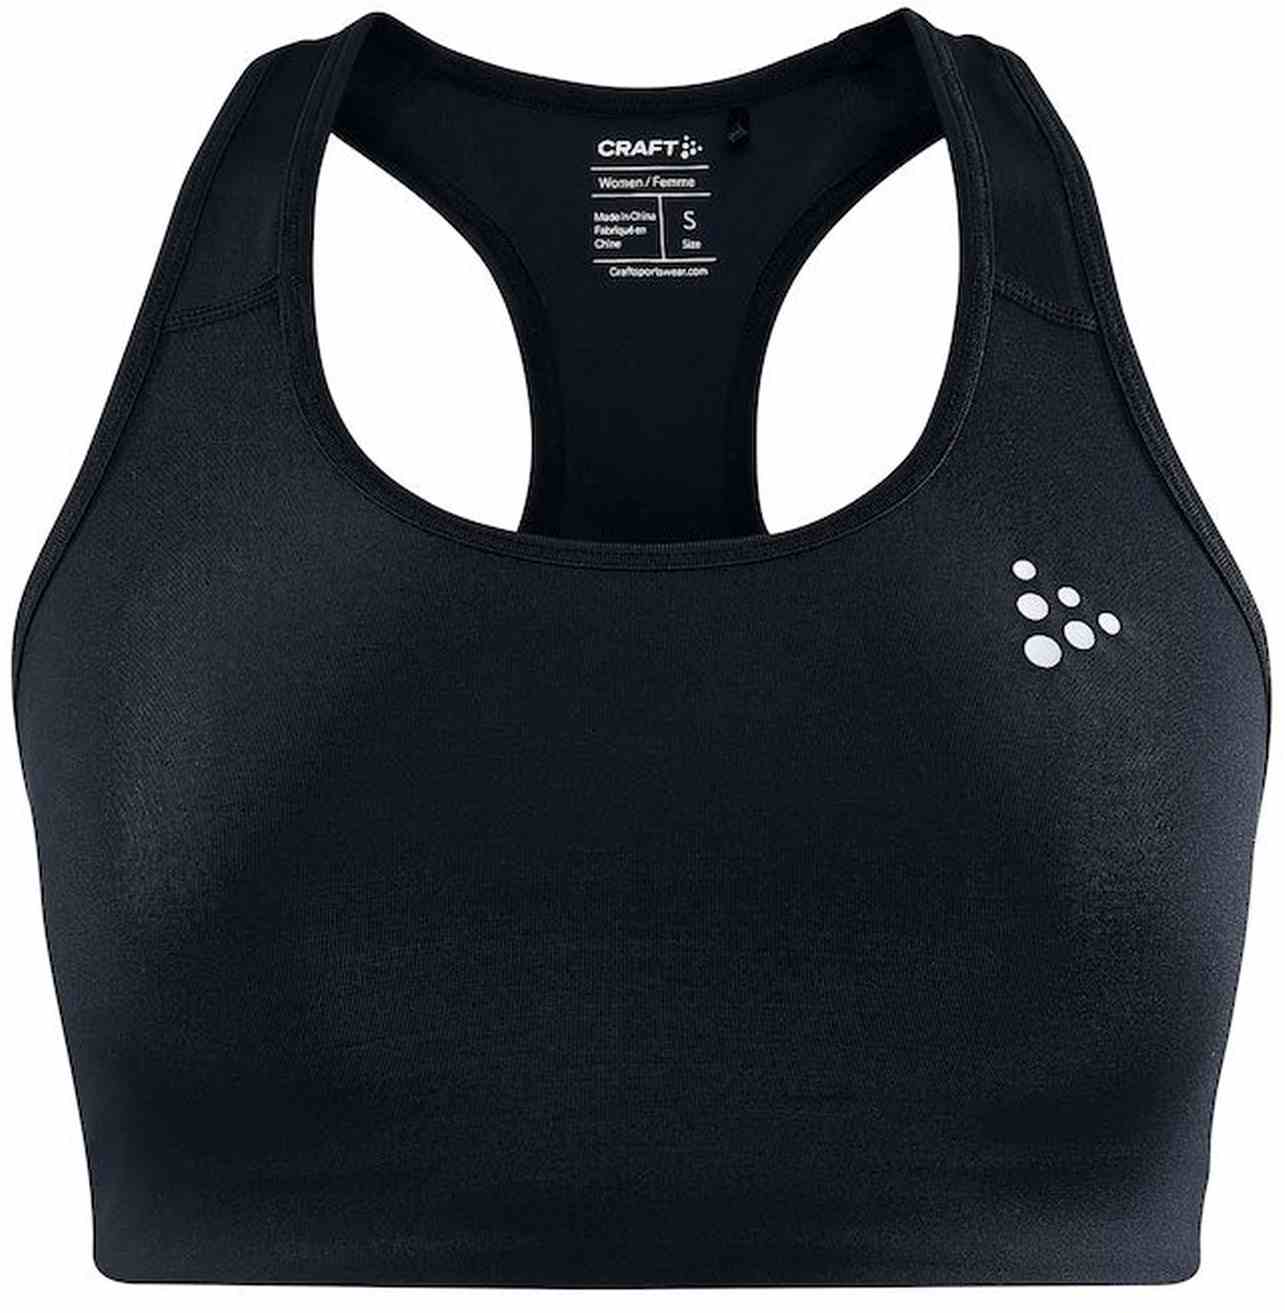 Women's functional sports bra